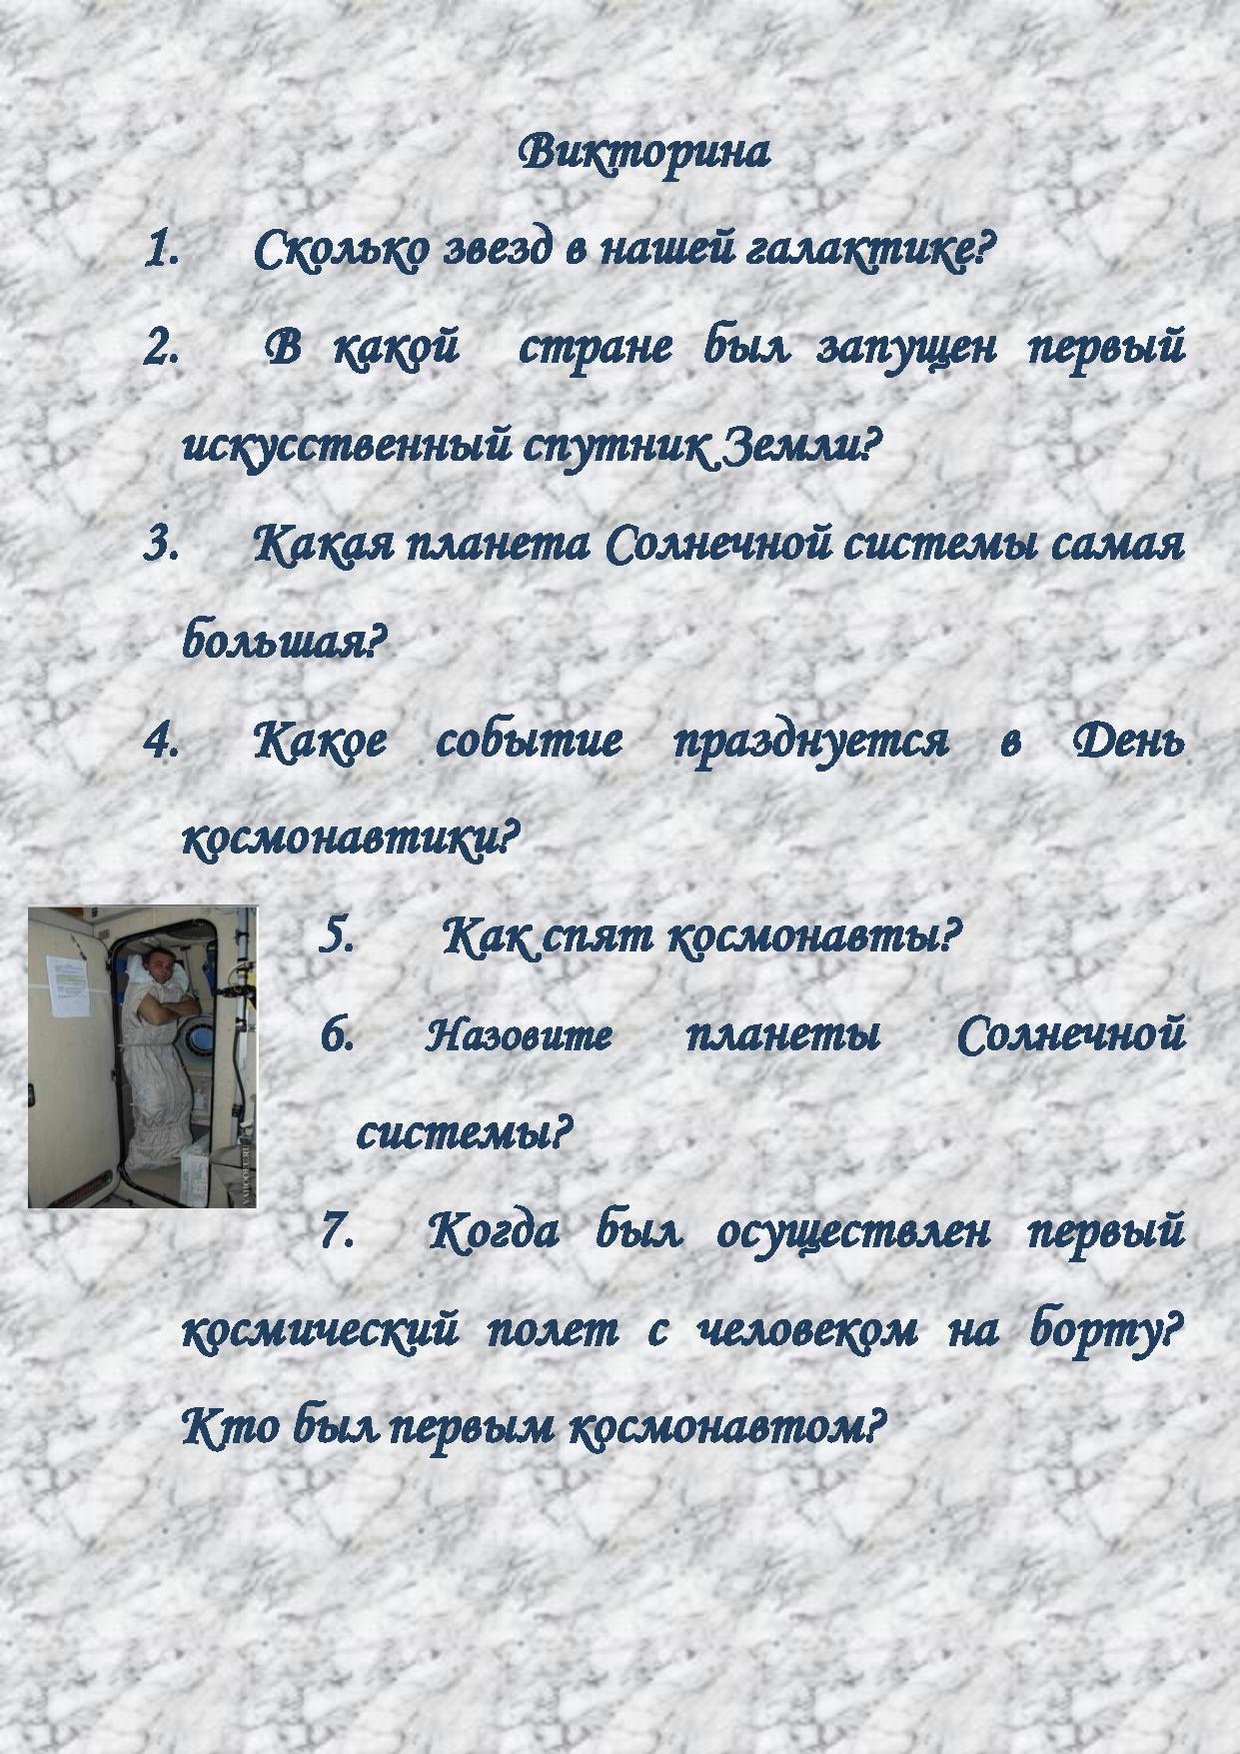 Викторина о космосе.pdf